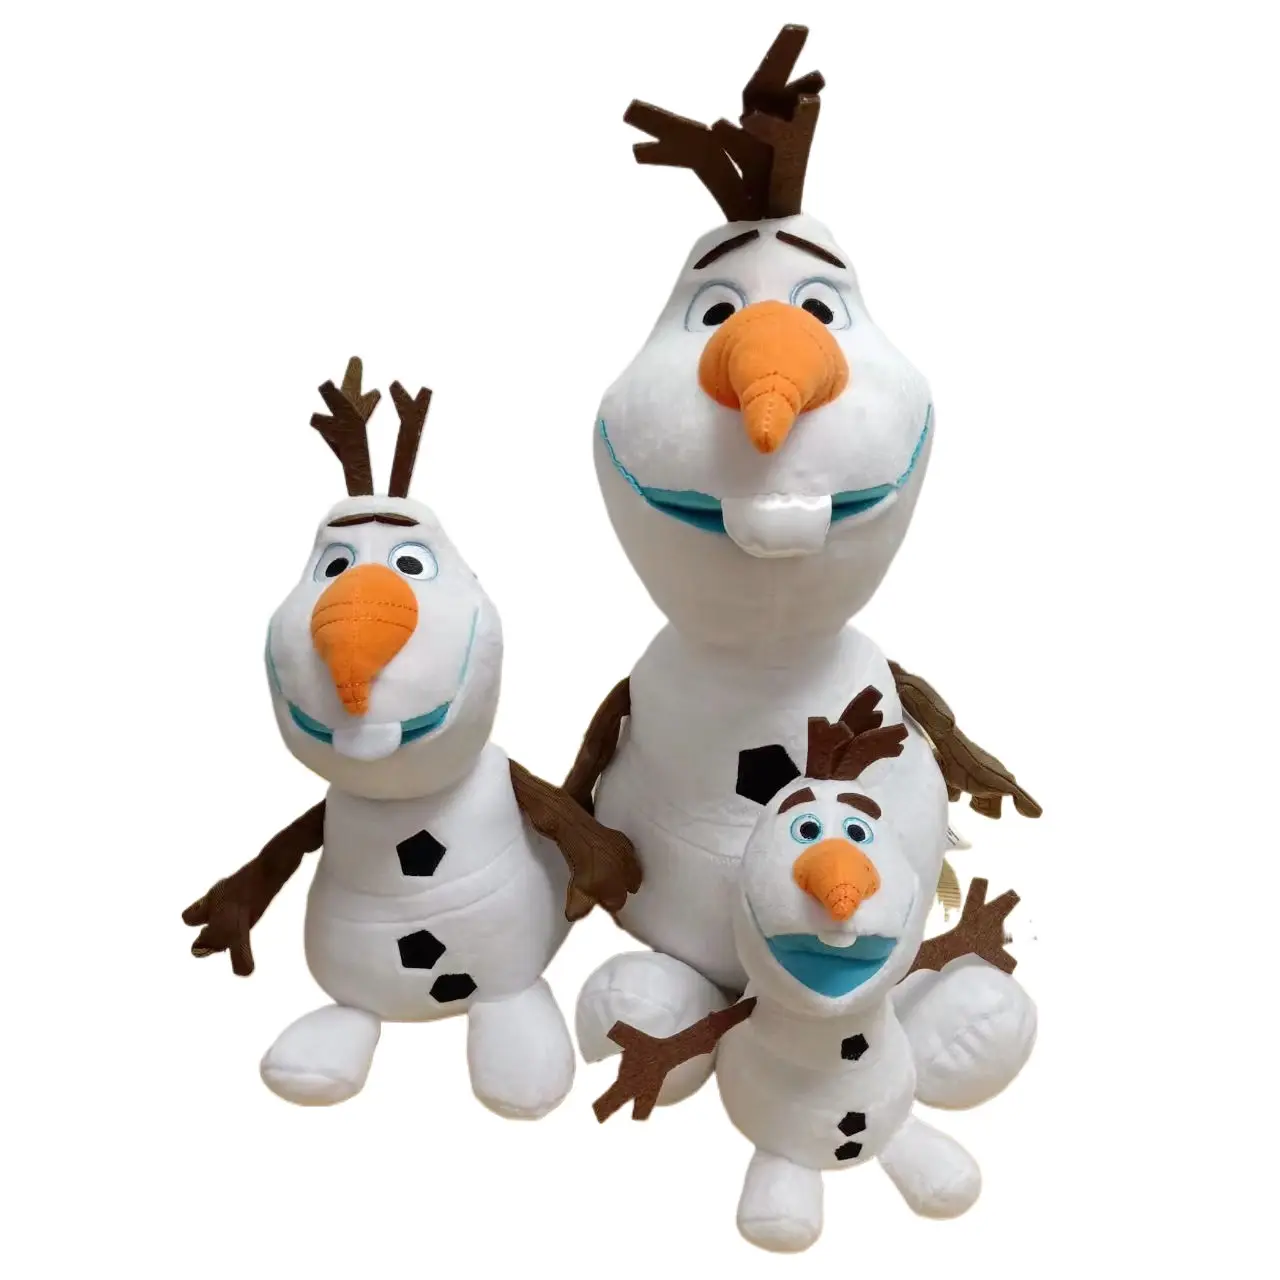 Nuova serie congelata pupazzo di neve Olaf peluche bambola all'ingrosso